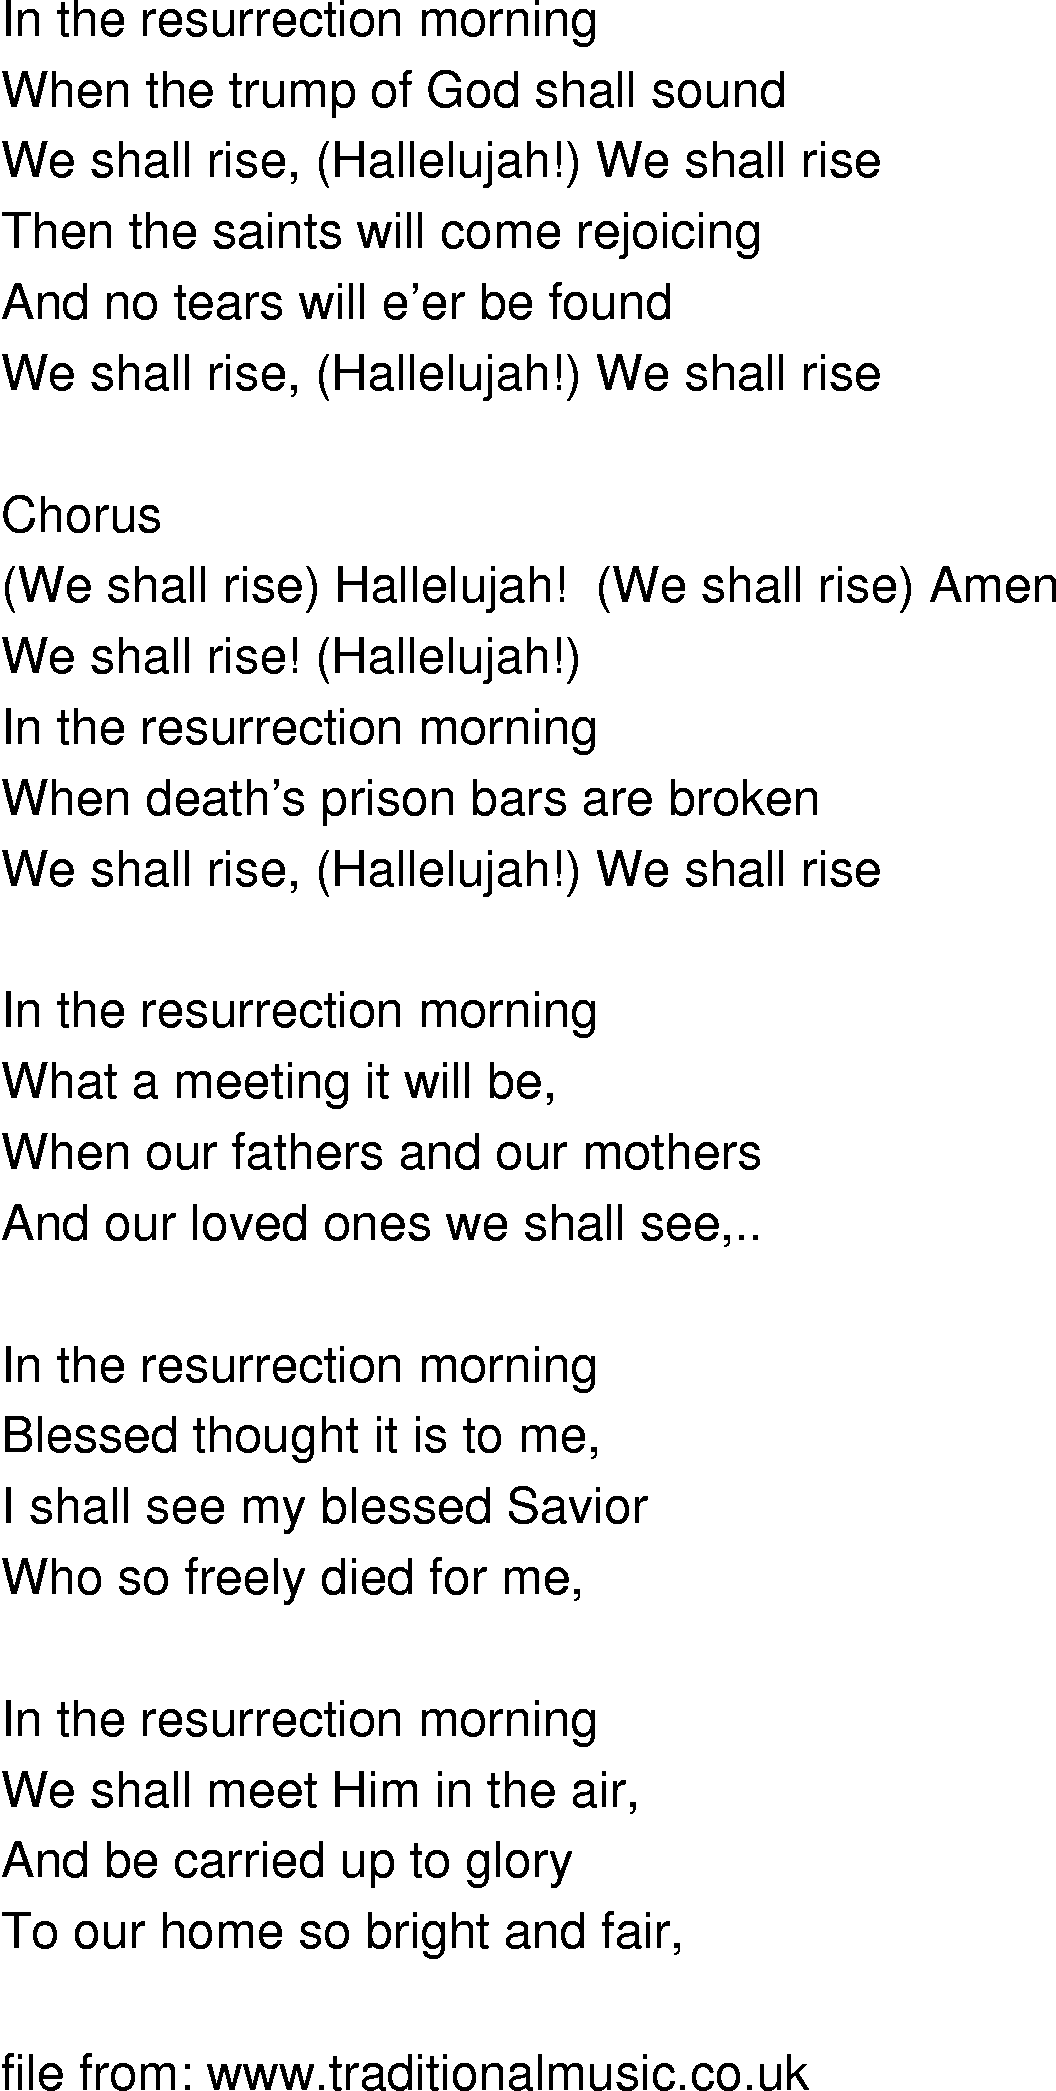 Old-Time (oldtimey) Song Lyrics - we shall rise